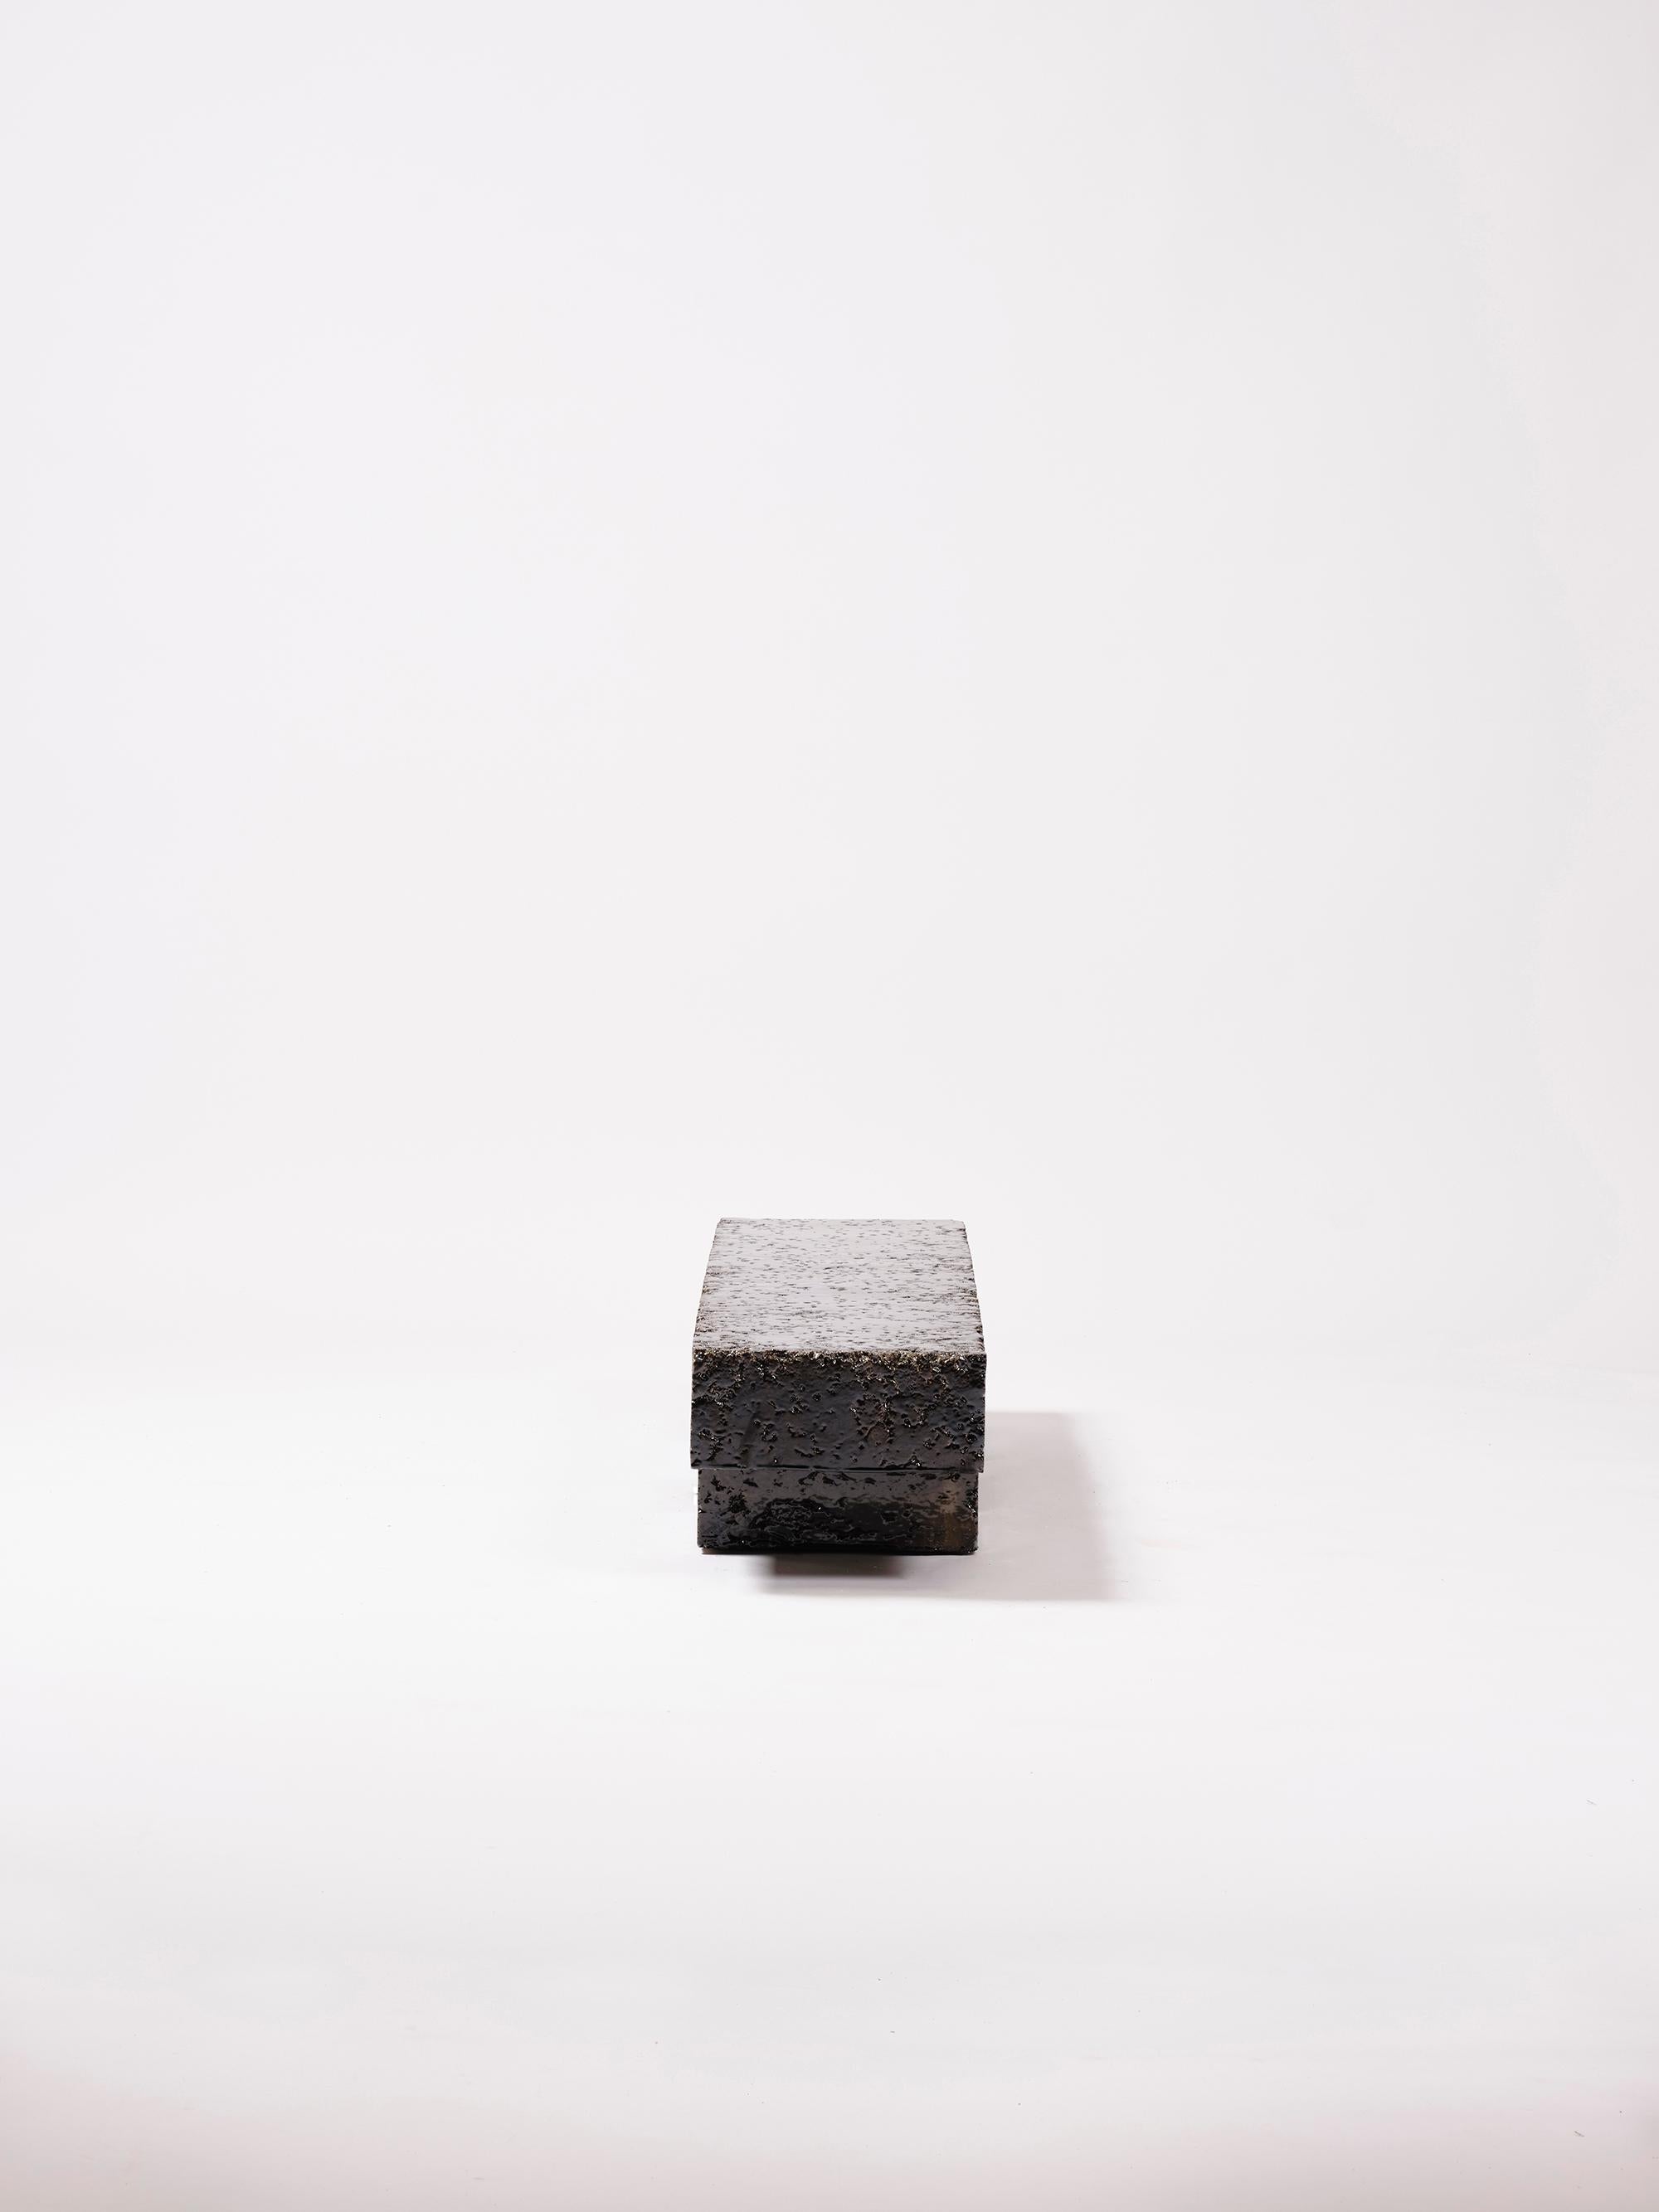 Table basse en grès fabriquée à la main dans l'atelier d'Apparatu à Barcelone. Différents corps d'argile sont mélangés à des fibres naturelles comme le maïs, la paille ou la paille de bruyère. Les pièces sont coulées à la main, créant une structure